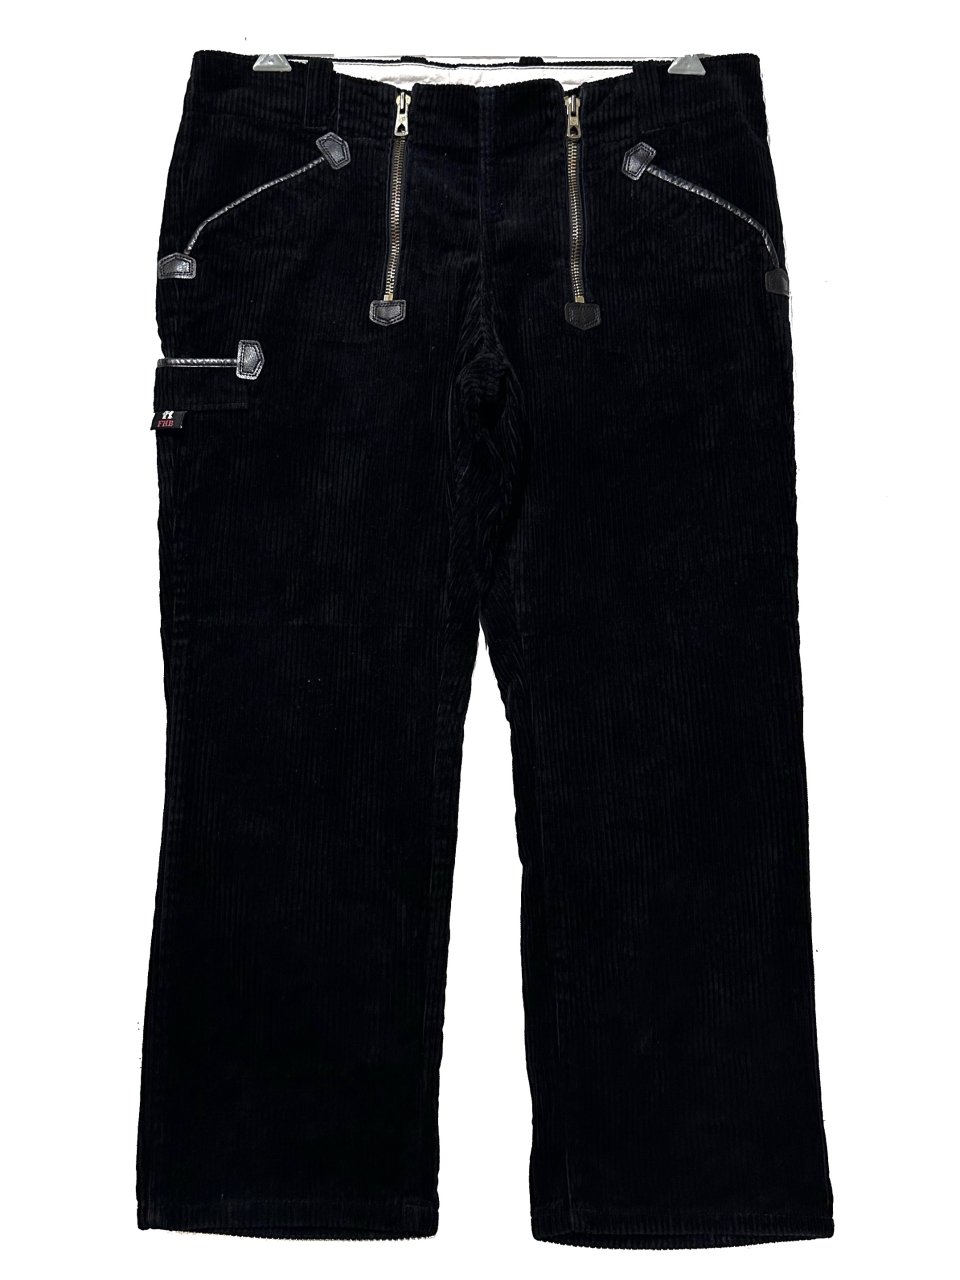 ドイツ製 90s FHB Corduroy Rogger Pants 黒 W37×L28 ロガーパンツ 木こりパンツ コーデュロイ ブラック 古着 -  NEWJOKE ONLINE STORE